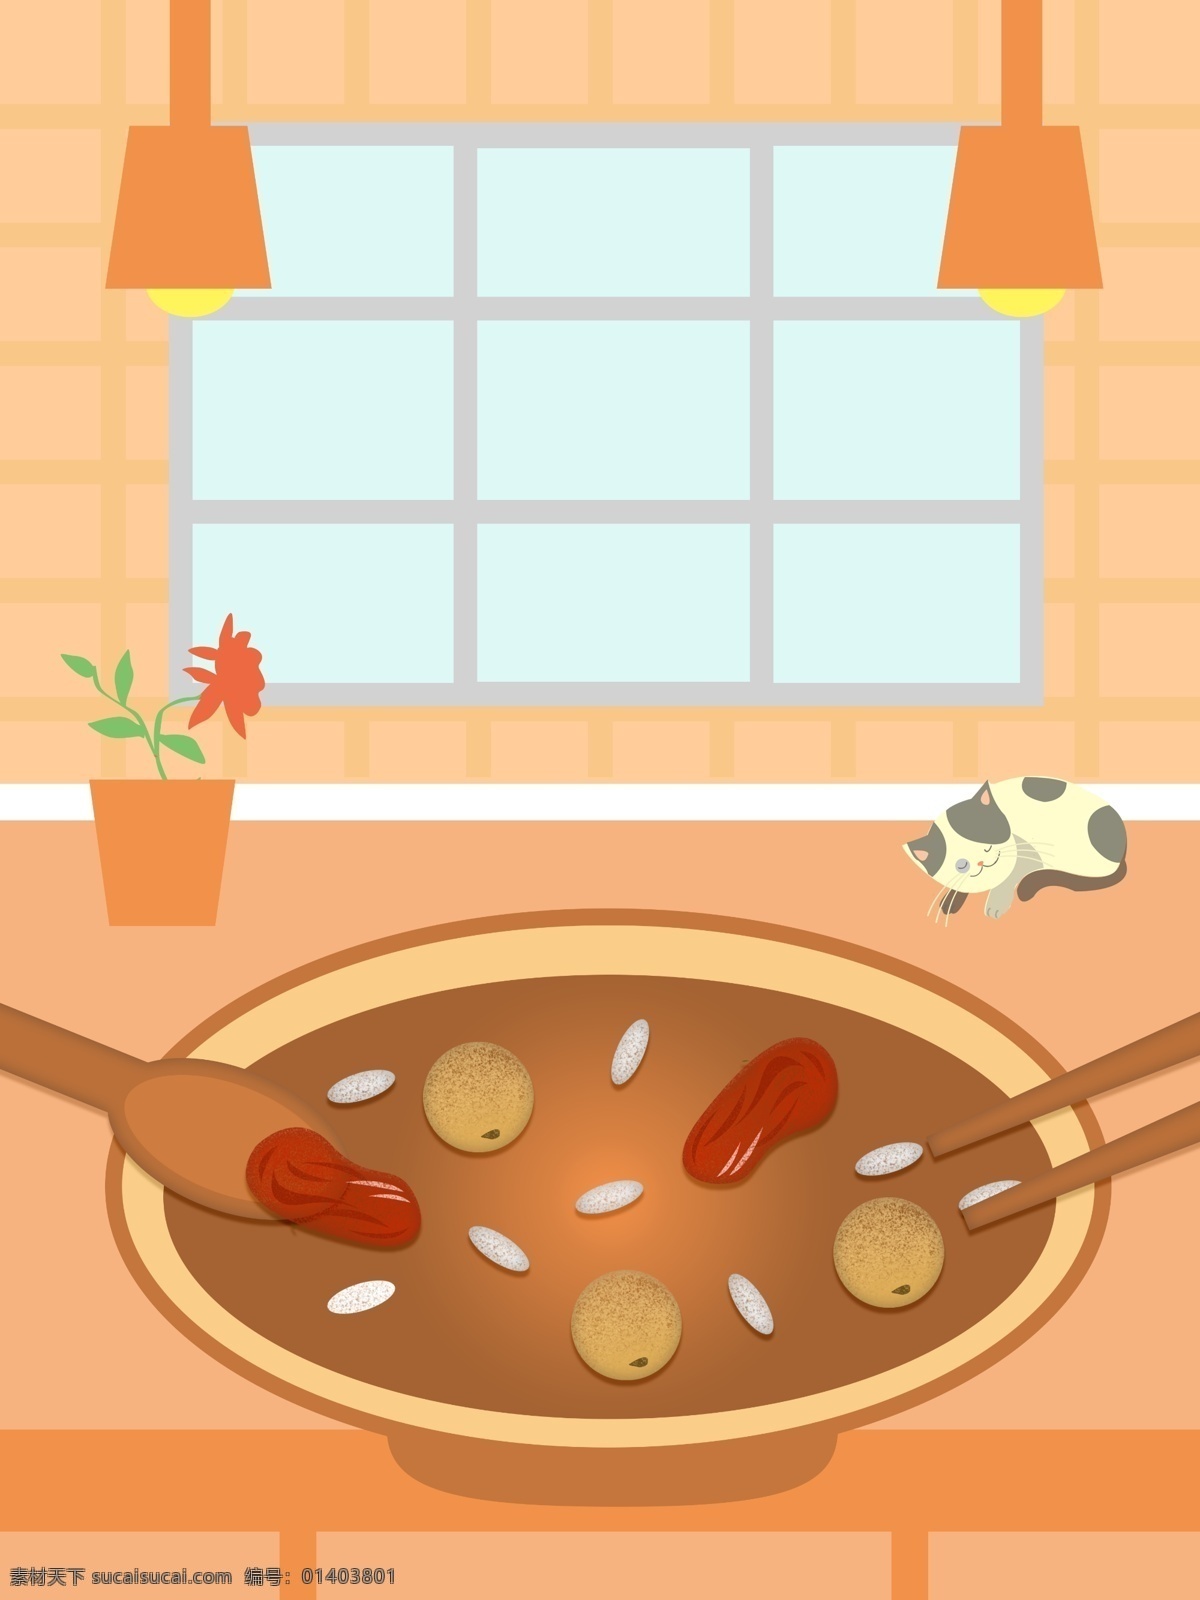 原创 简约 扁平化 室内 吃饭 分层 插画 窗户 psd分层 小猫 食物 筷子 碗筷 勺子 花盆 桌子 吊灯